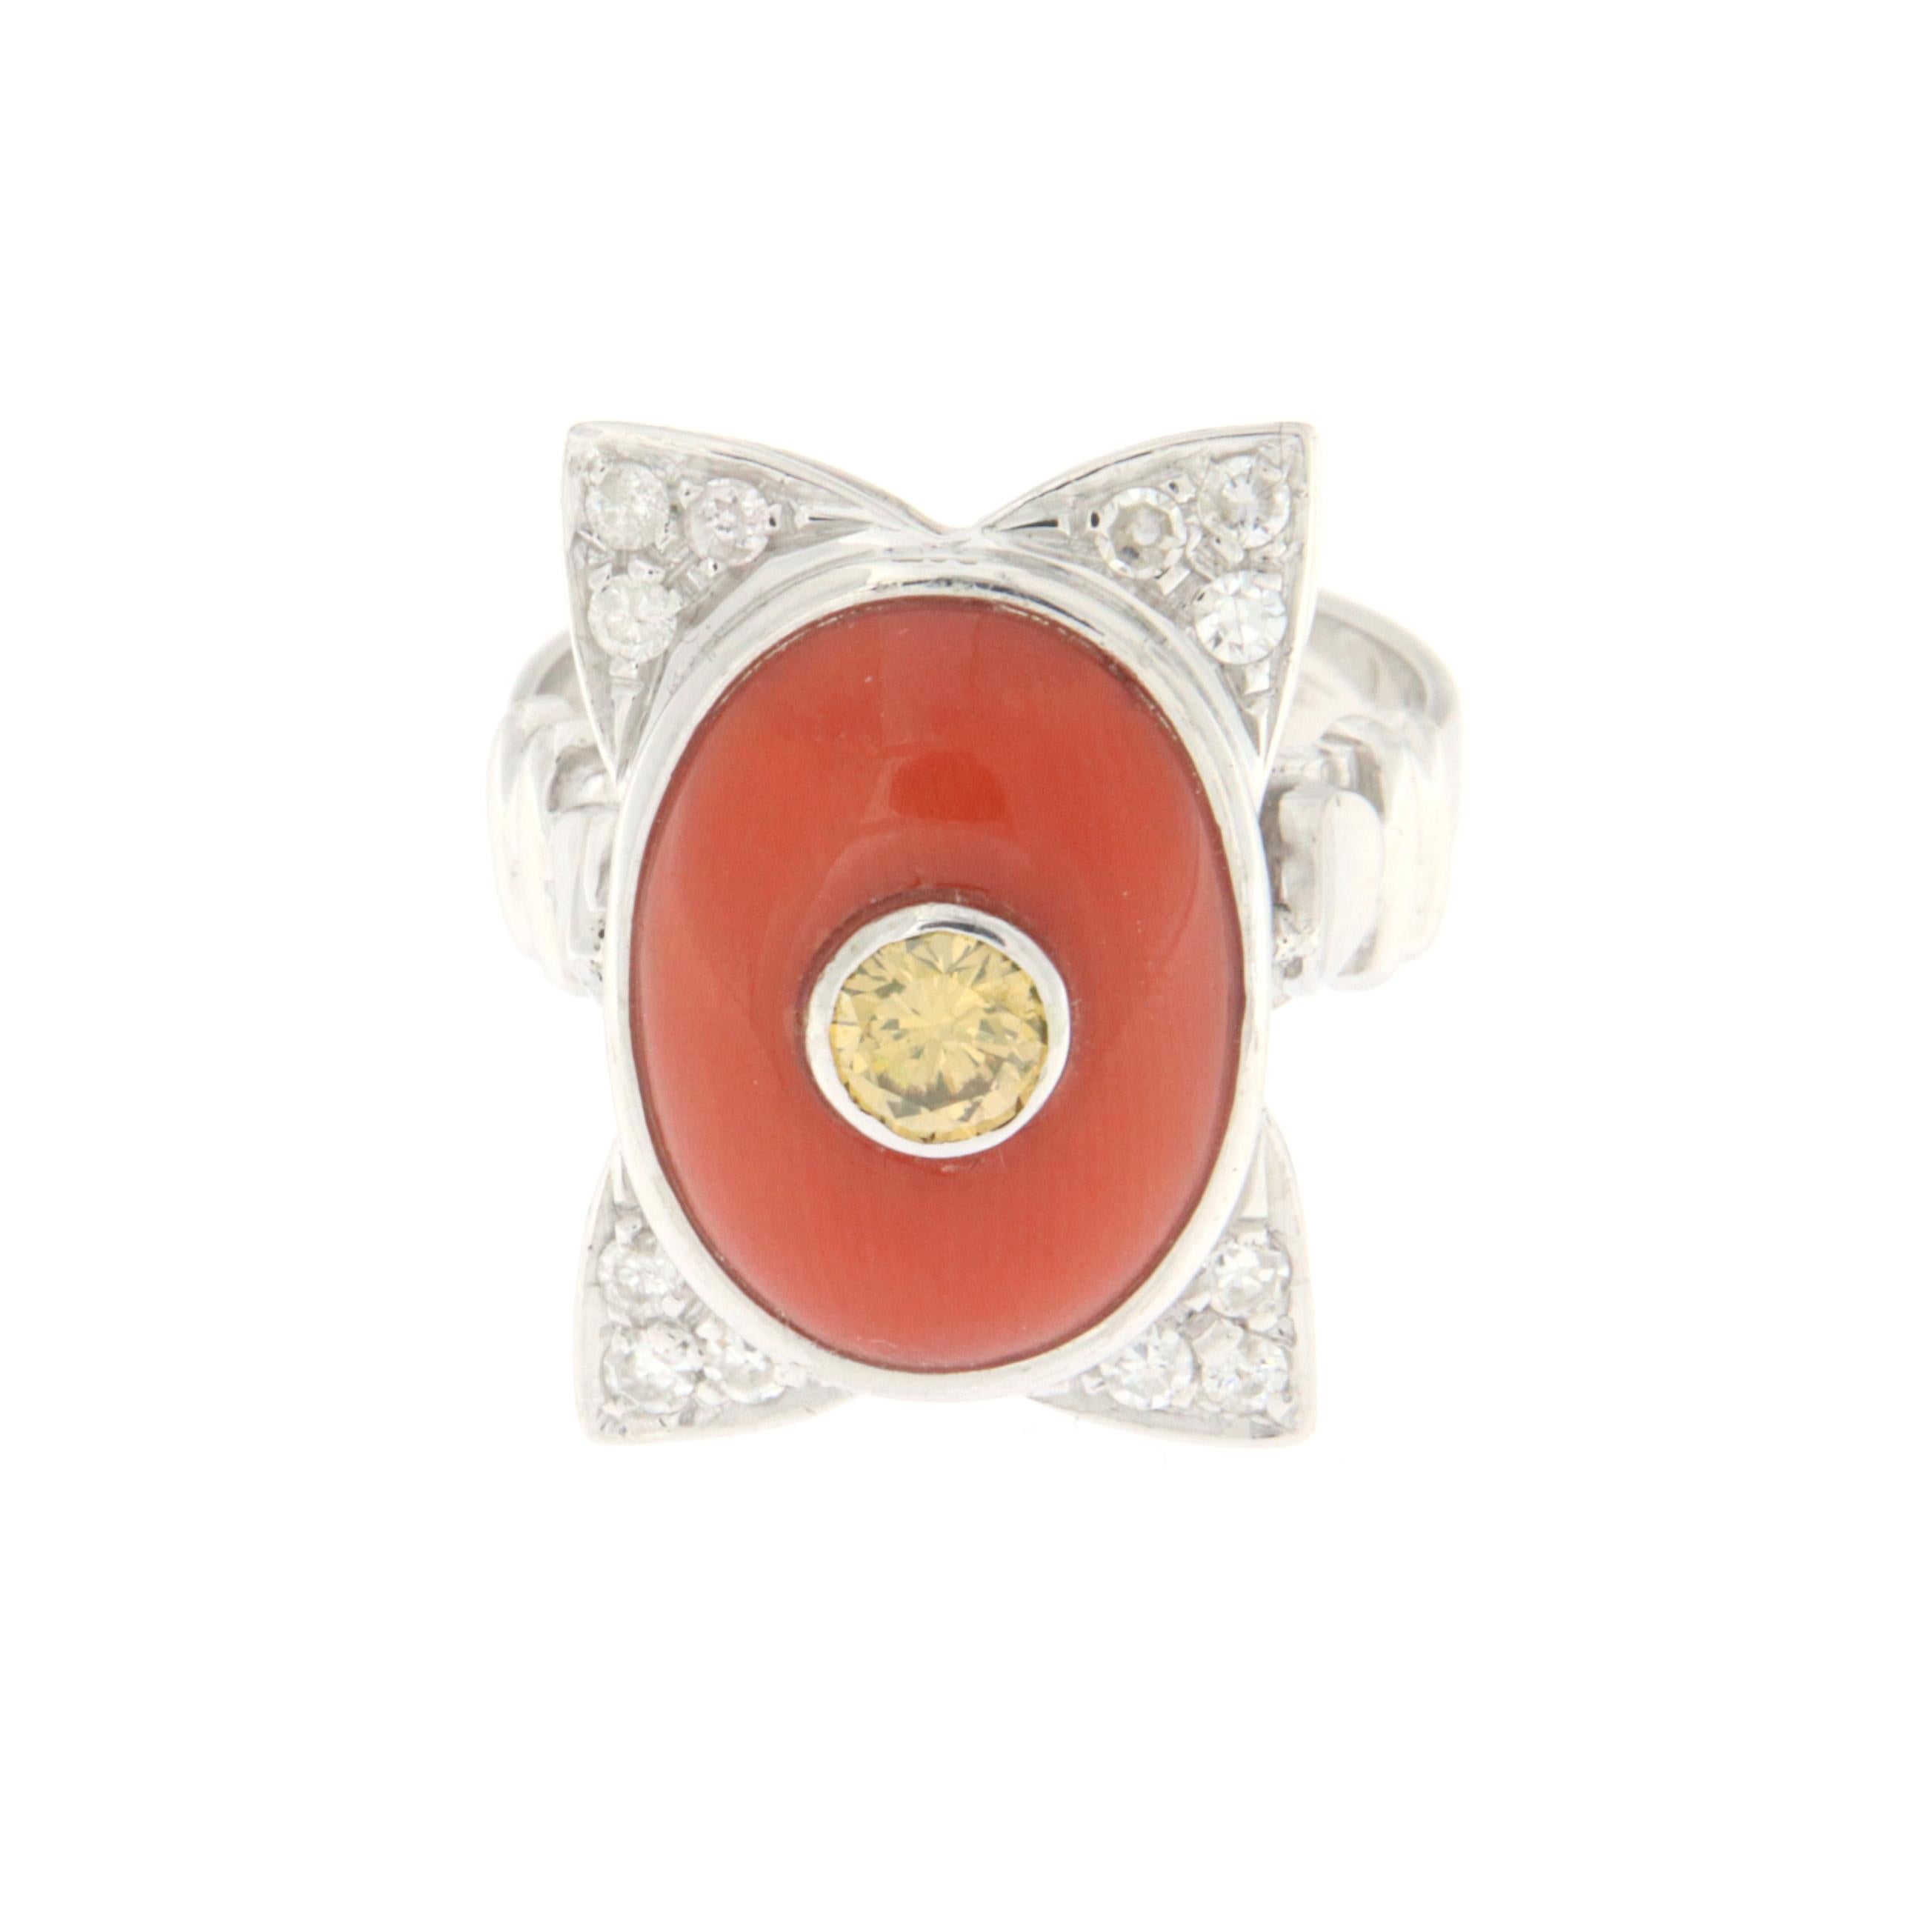 Dieser exquisite Ring aus 18 Karat Weißgold ist ein Meisterwerk an Design und Luxus. In seiner Mitte befindet sich eine natürliche Koralle im Ovalschliff mit einer tiefen und verführerischen Farbe, die einen gelben Diamanten von 0,30 Karat